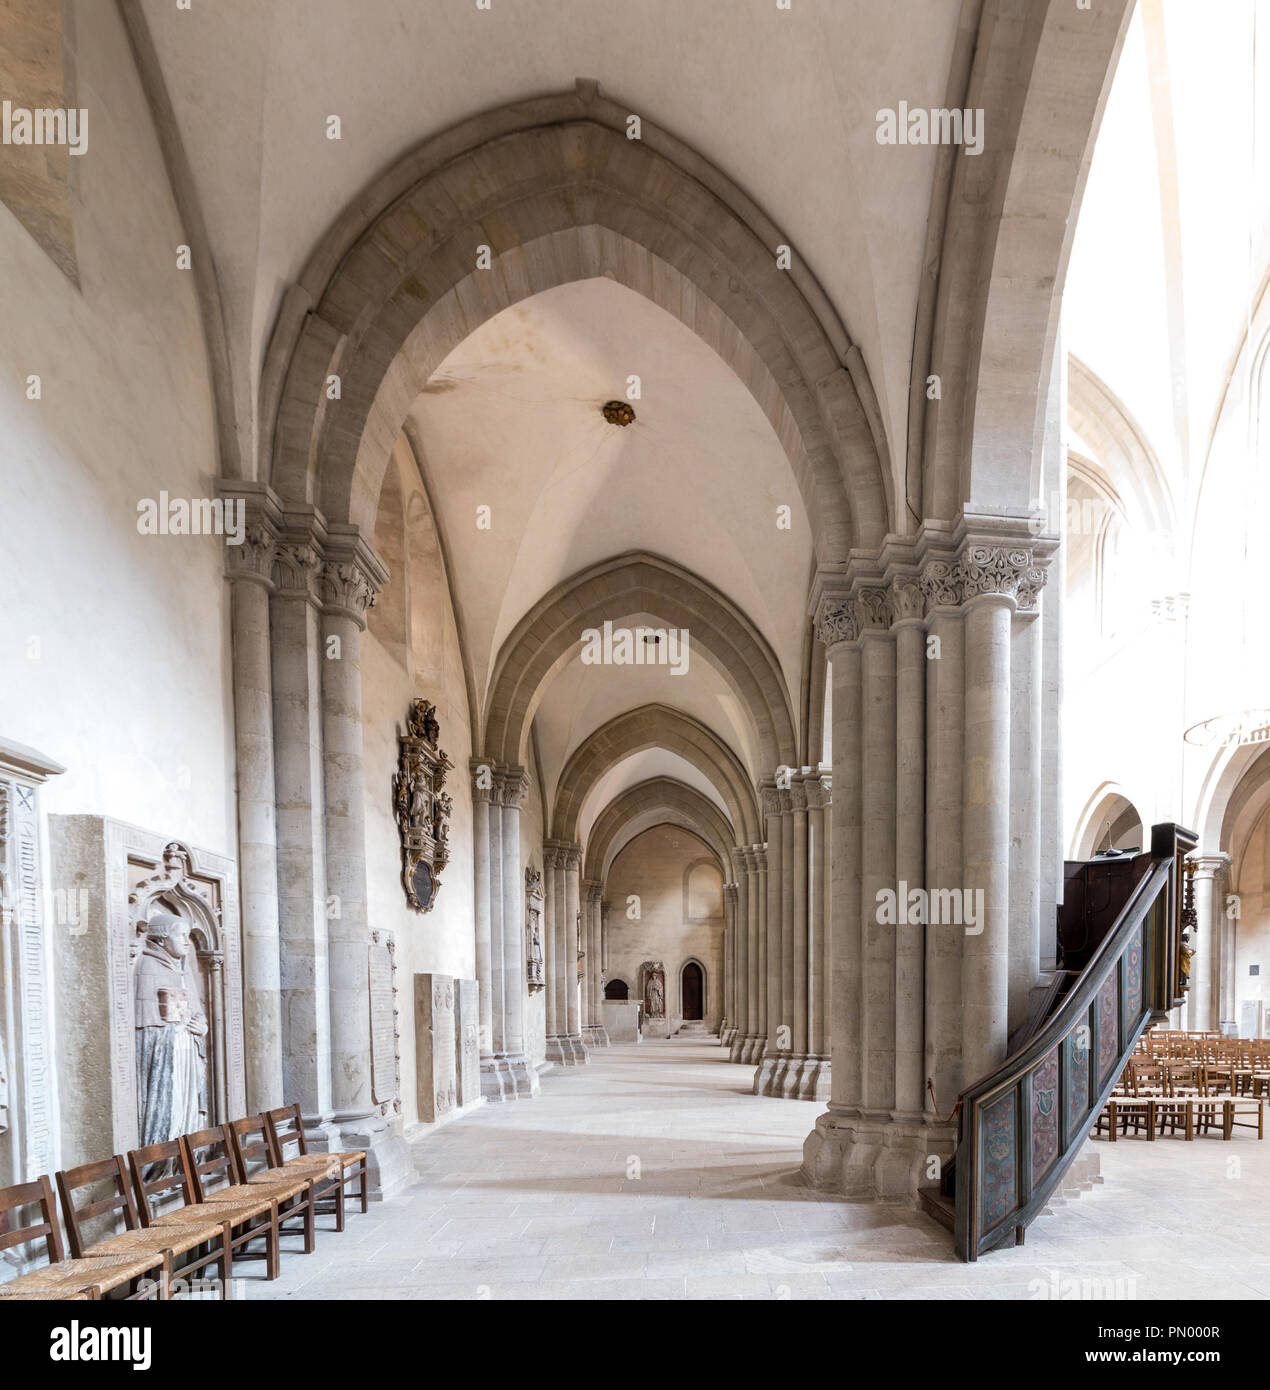 Naumburg, Germania - 14 Settembre 2018: vista nella navata della Cattedrale di Naumburg, che appartiene al patrimonio culturale mondiale dell'Unesco, Germania. Foto Stock